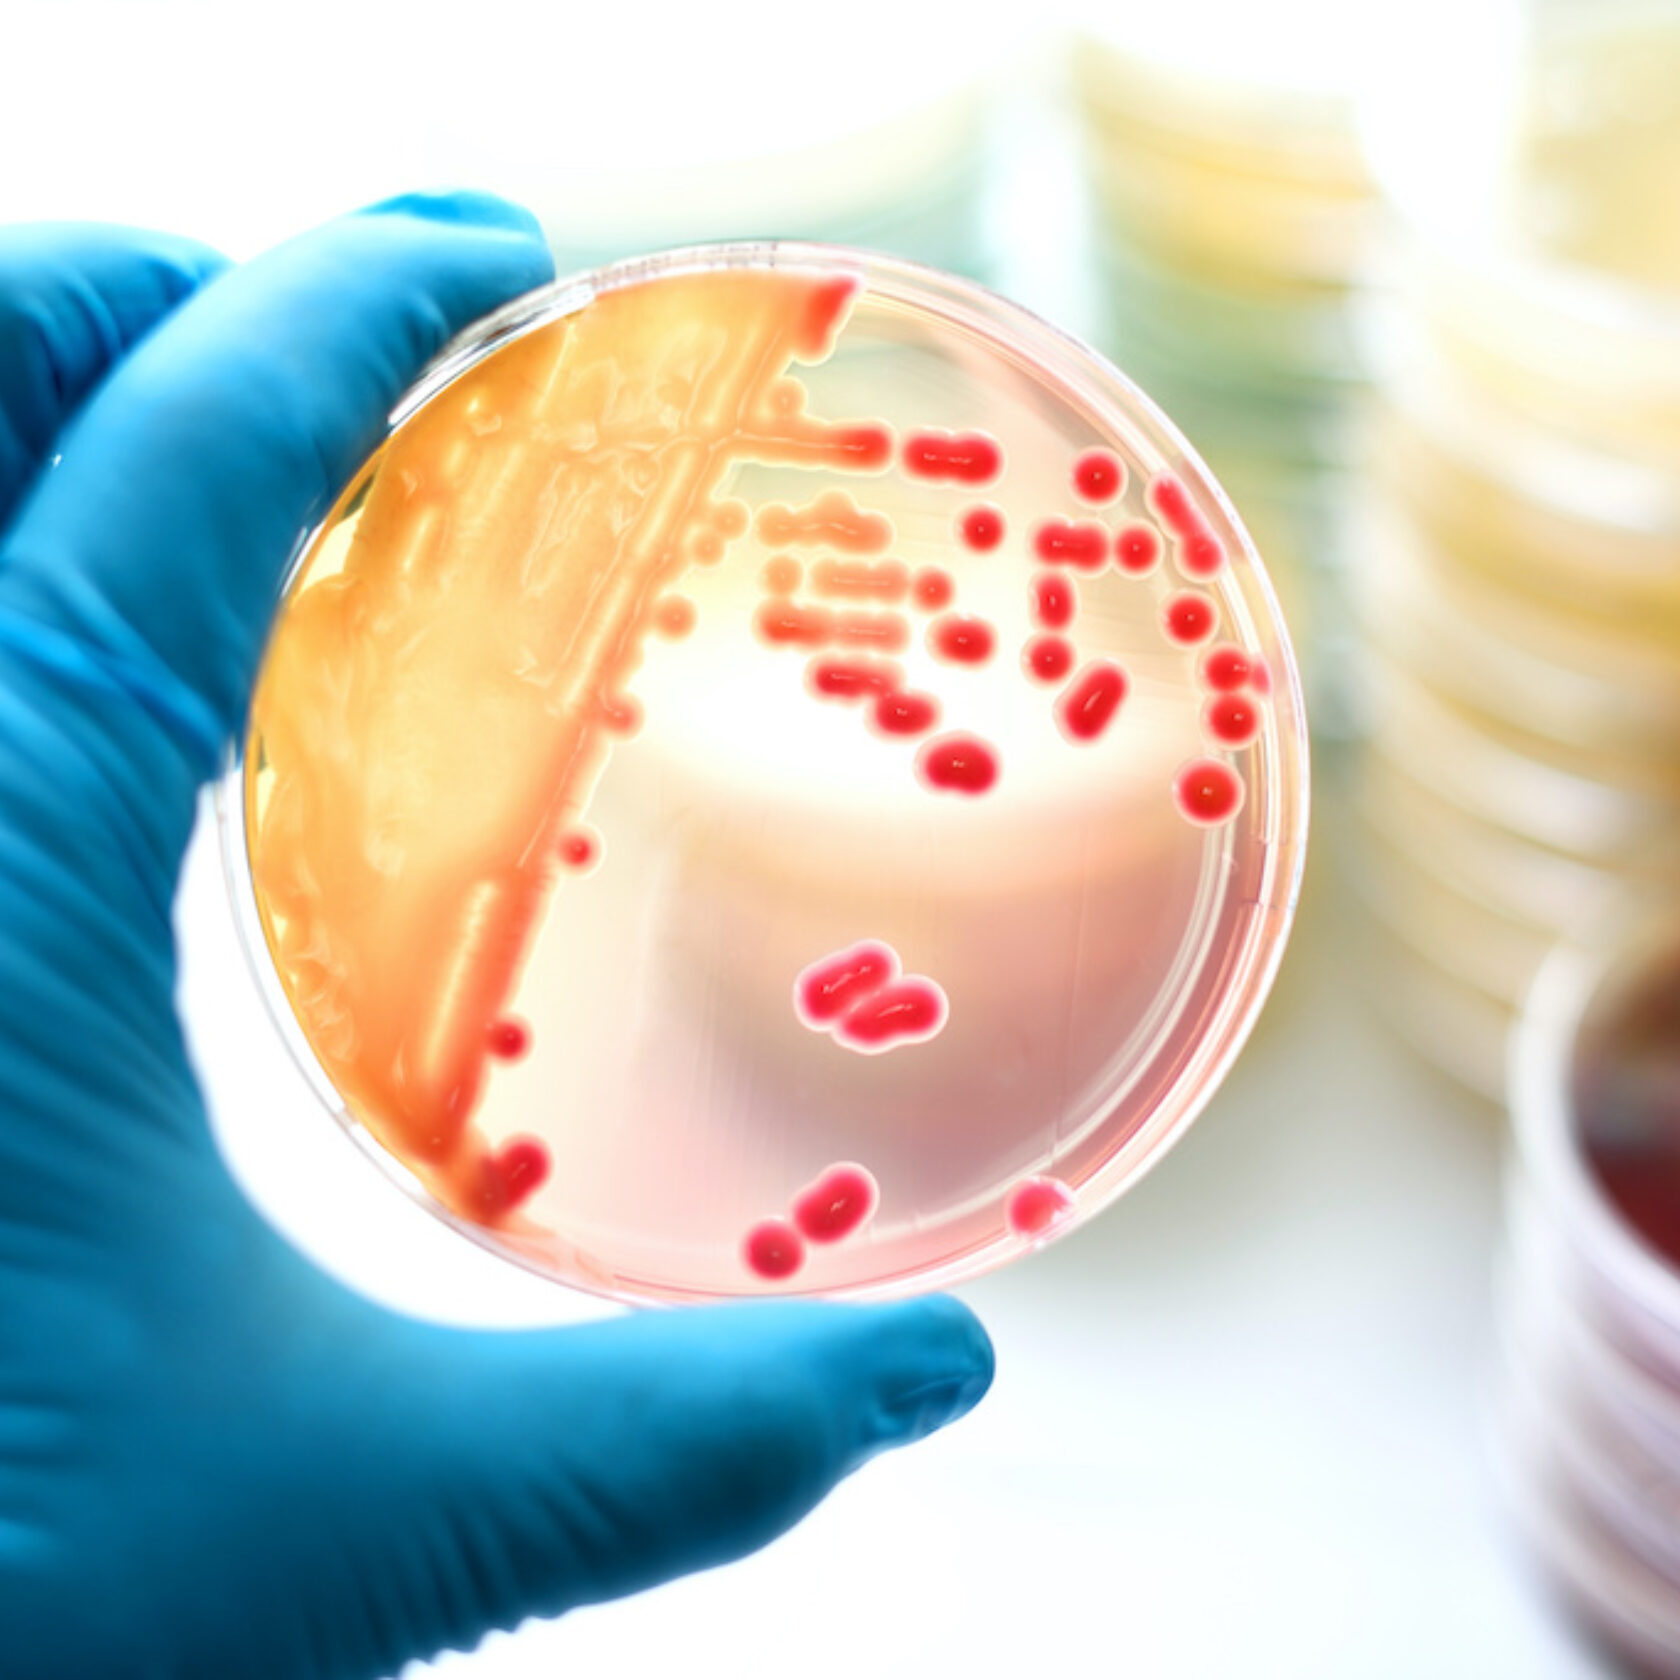 Bakterienkultur in einer Petrischale